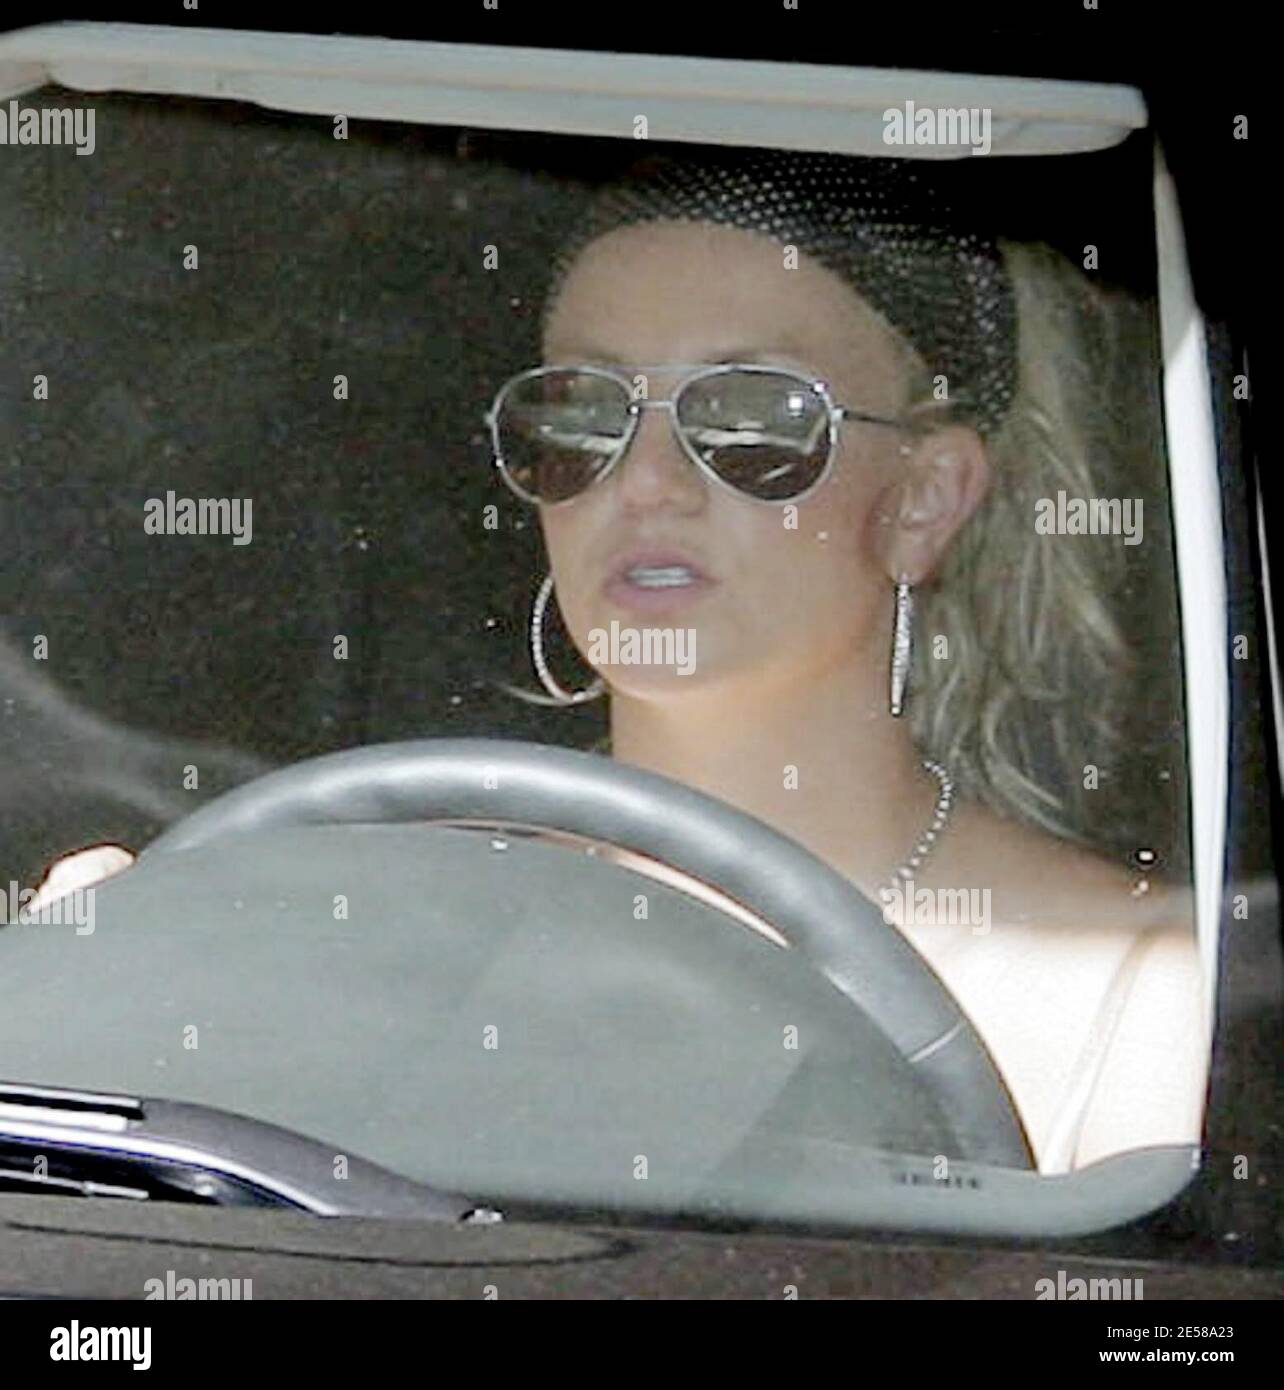 Britney Spears ha visitato oggi i suoi avvocati seguendo i rapporti che ha  chiesto ad una stazione radio della Florida di abbattere le pubblicità  offensive che descrivono la cantante con una testa